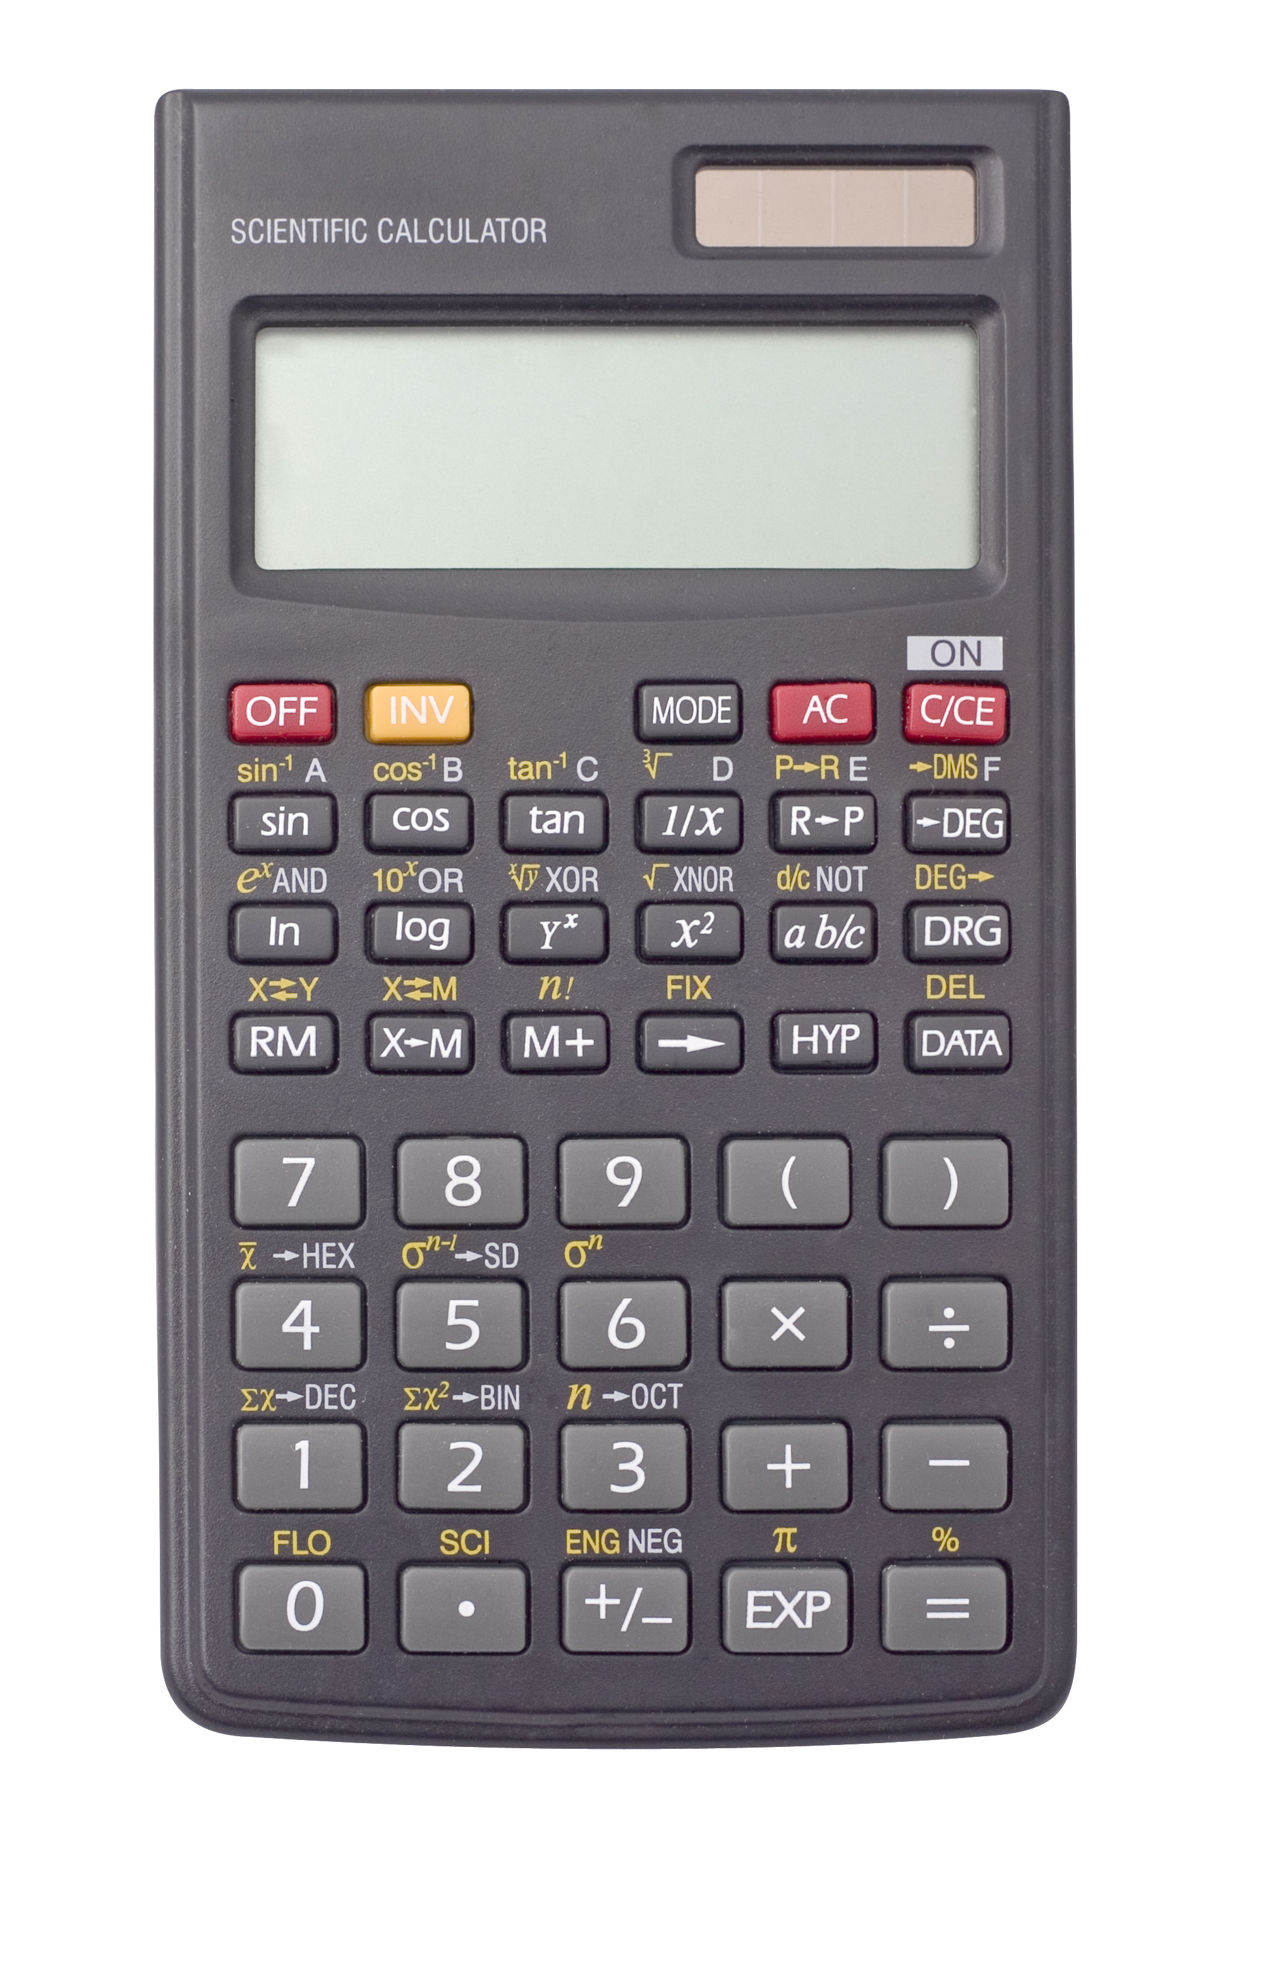 essay about the scientific calculator